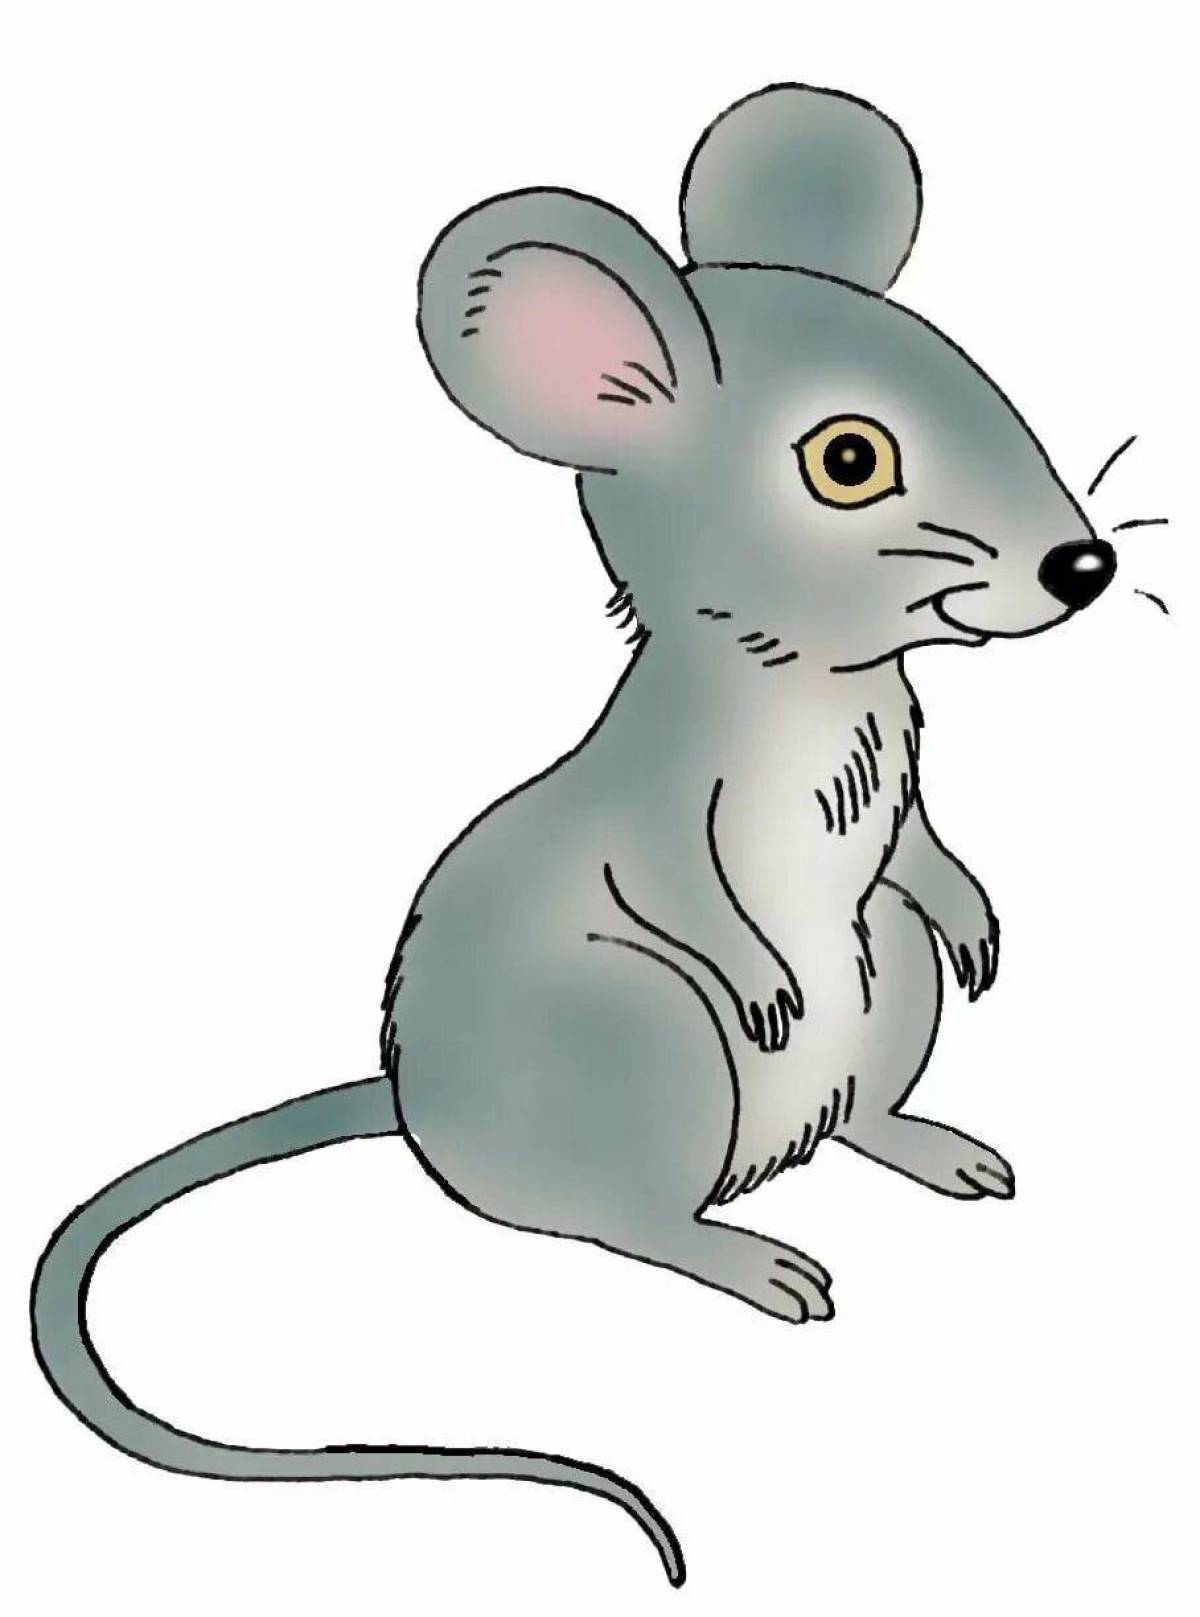 Картинки мышь для детей на прозрачном фоне. Мышка рисунок. Мышка для детей. Мышка картинка для детей. Мышонок рисунок.